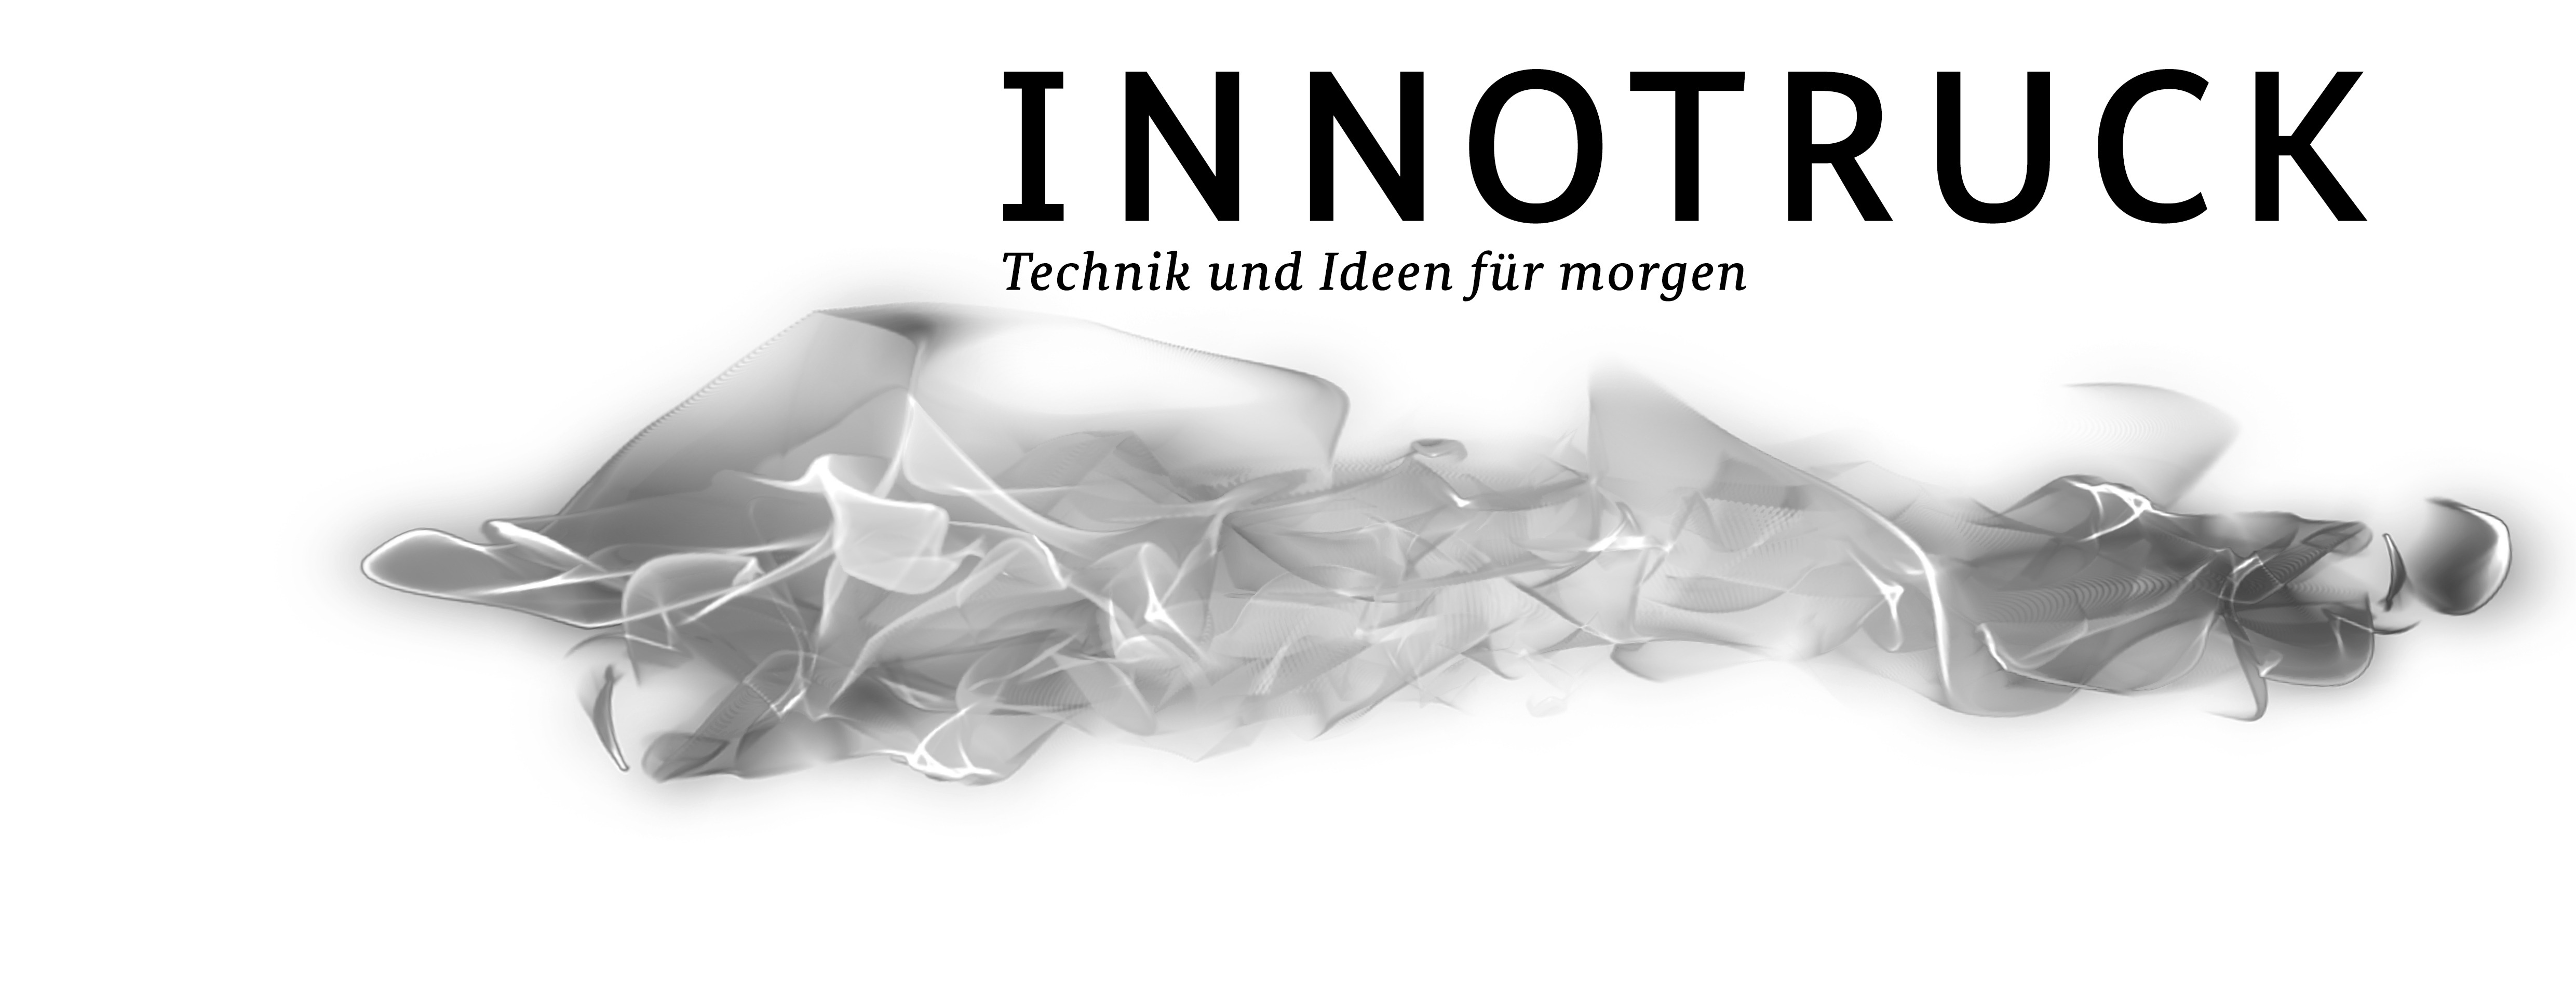 innotruck Logo